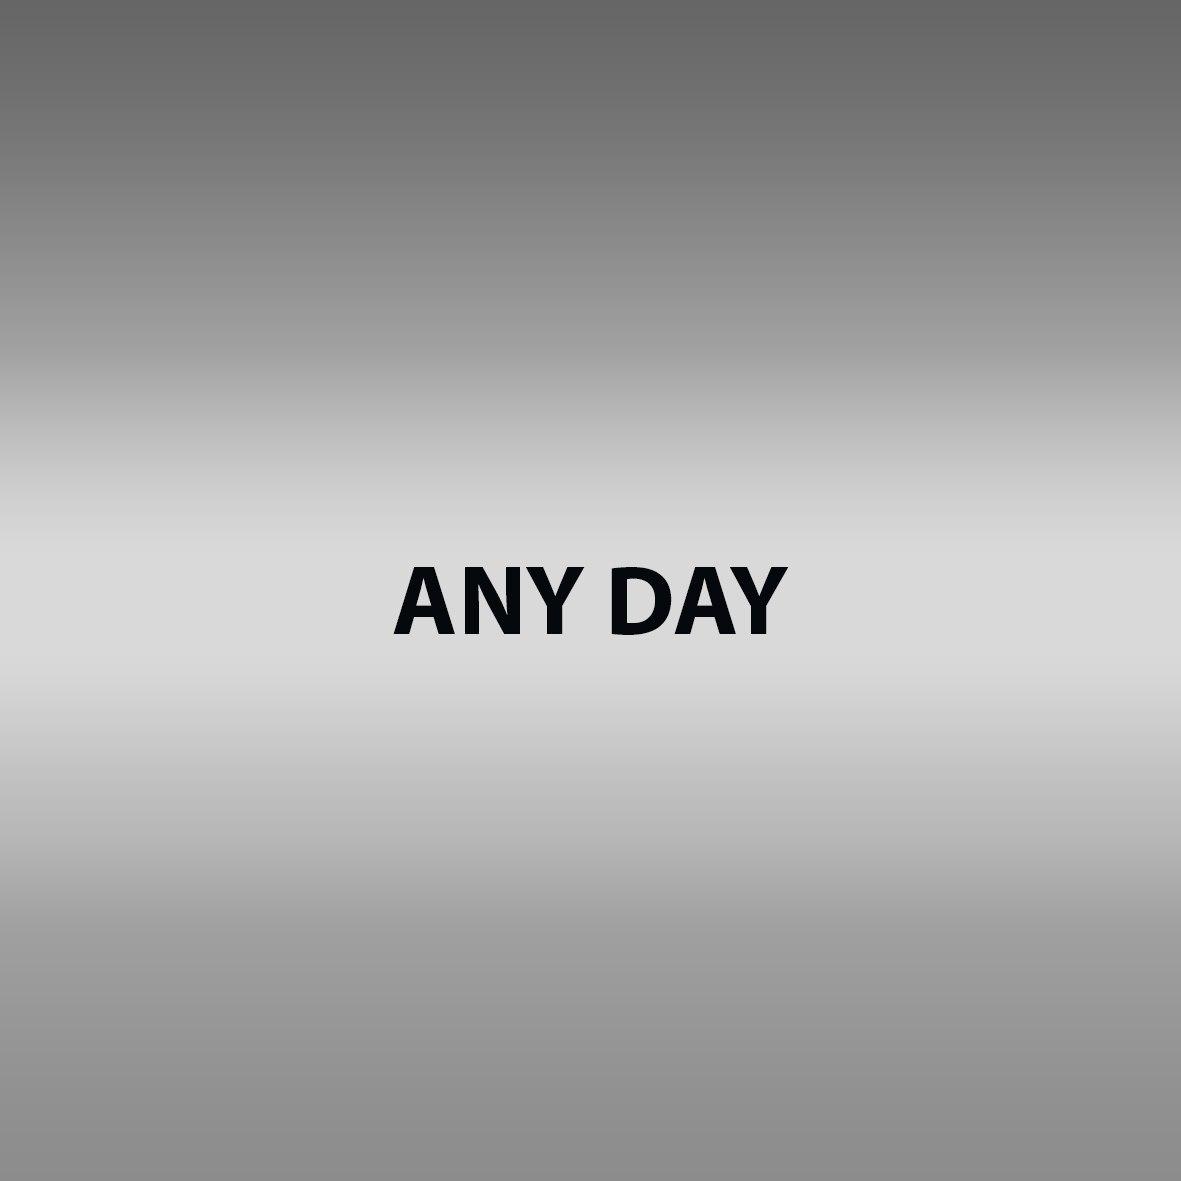 Any day